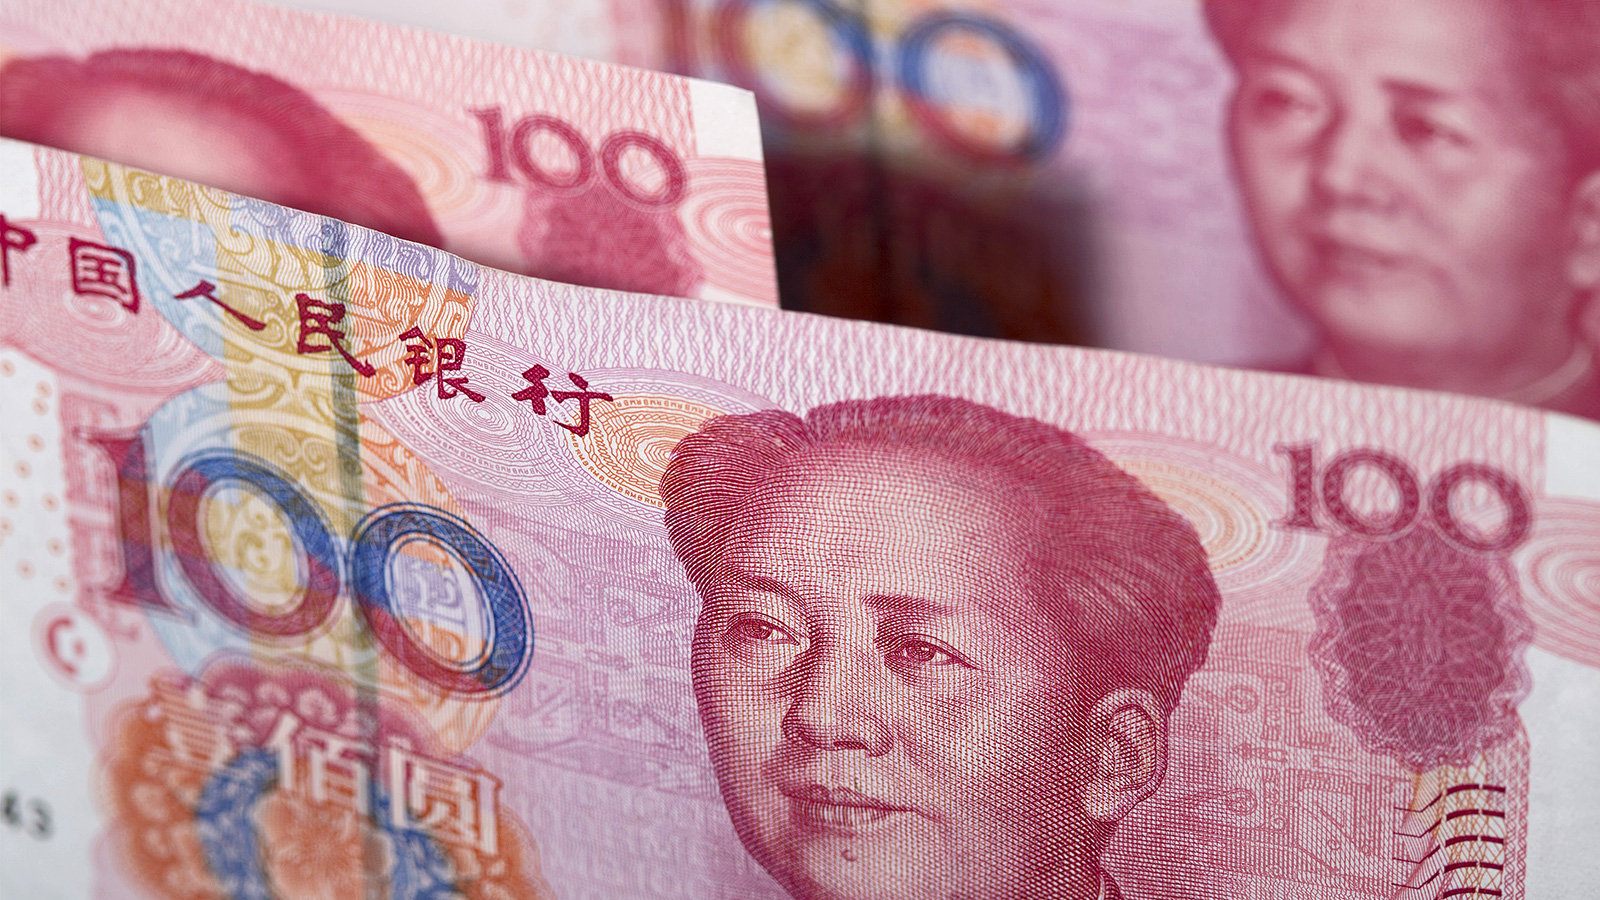 ‪الميزان التجاري بين الصين وأميركا في 2019 سجل فائضا بـ 295.8 مليار دولار لصالح بكين‬ (غيتي)